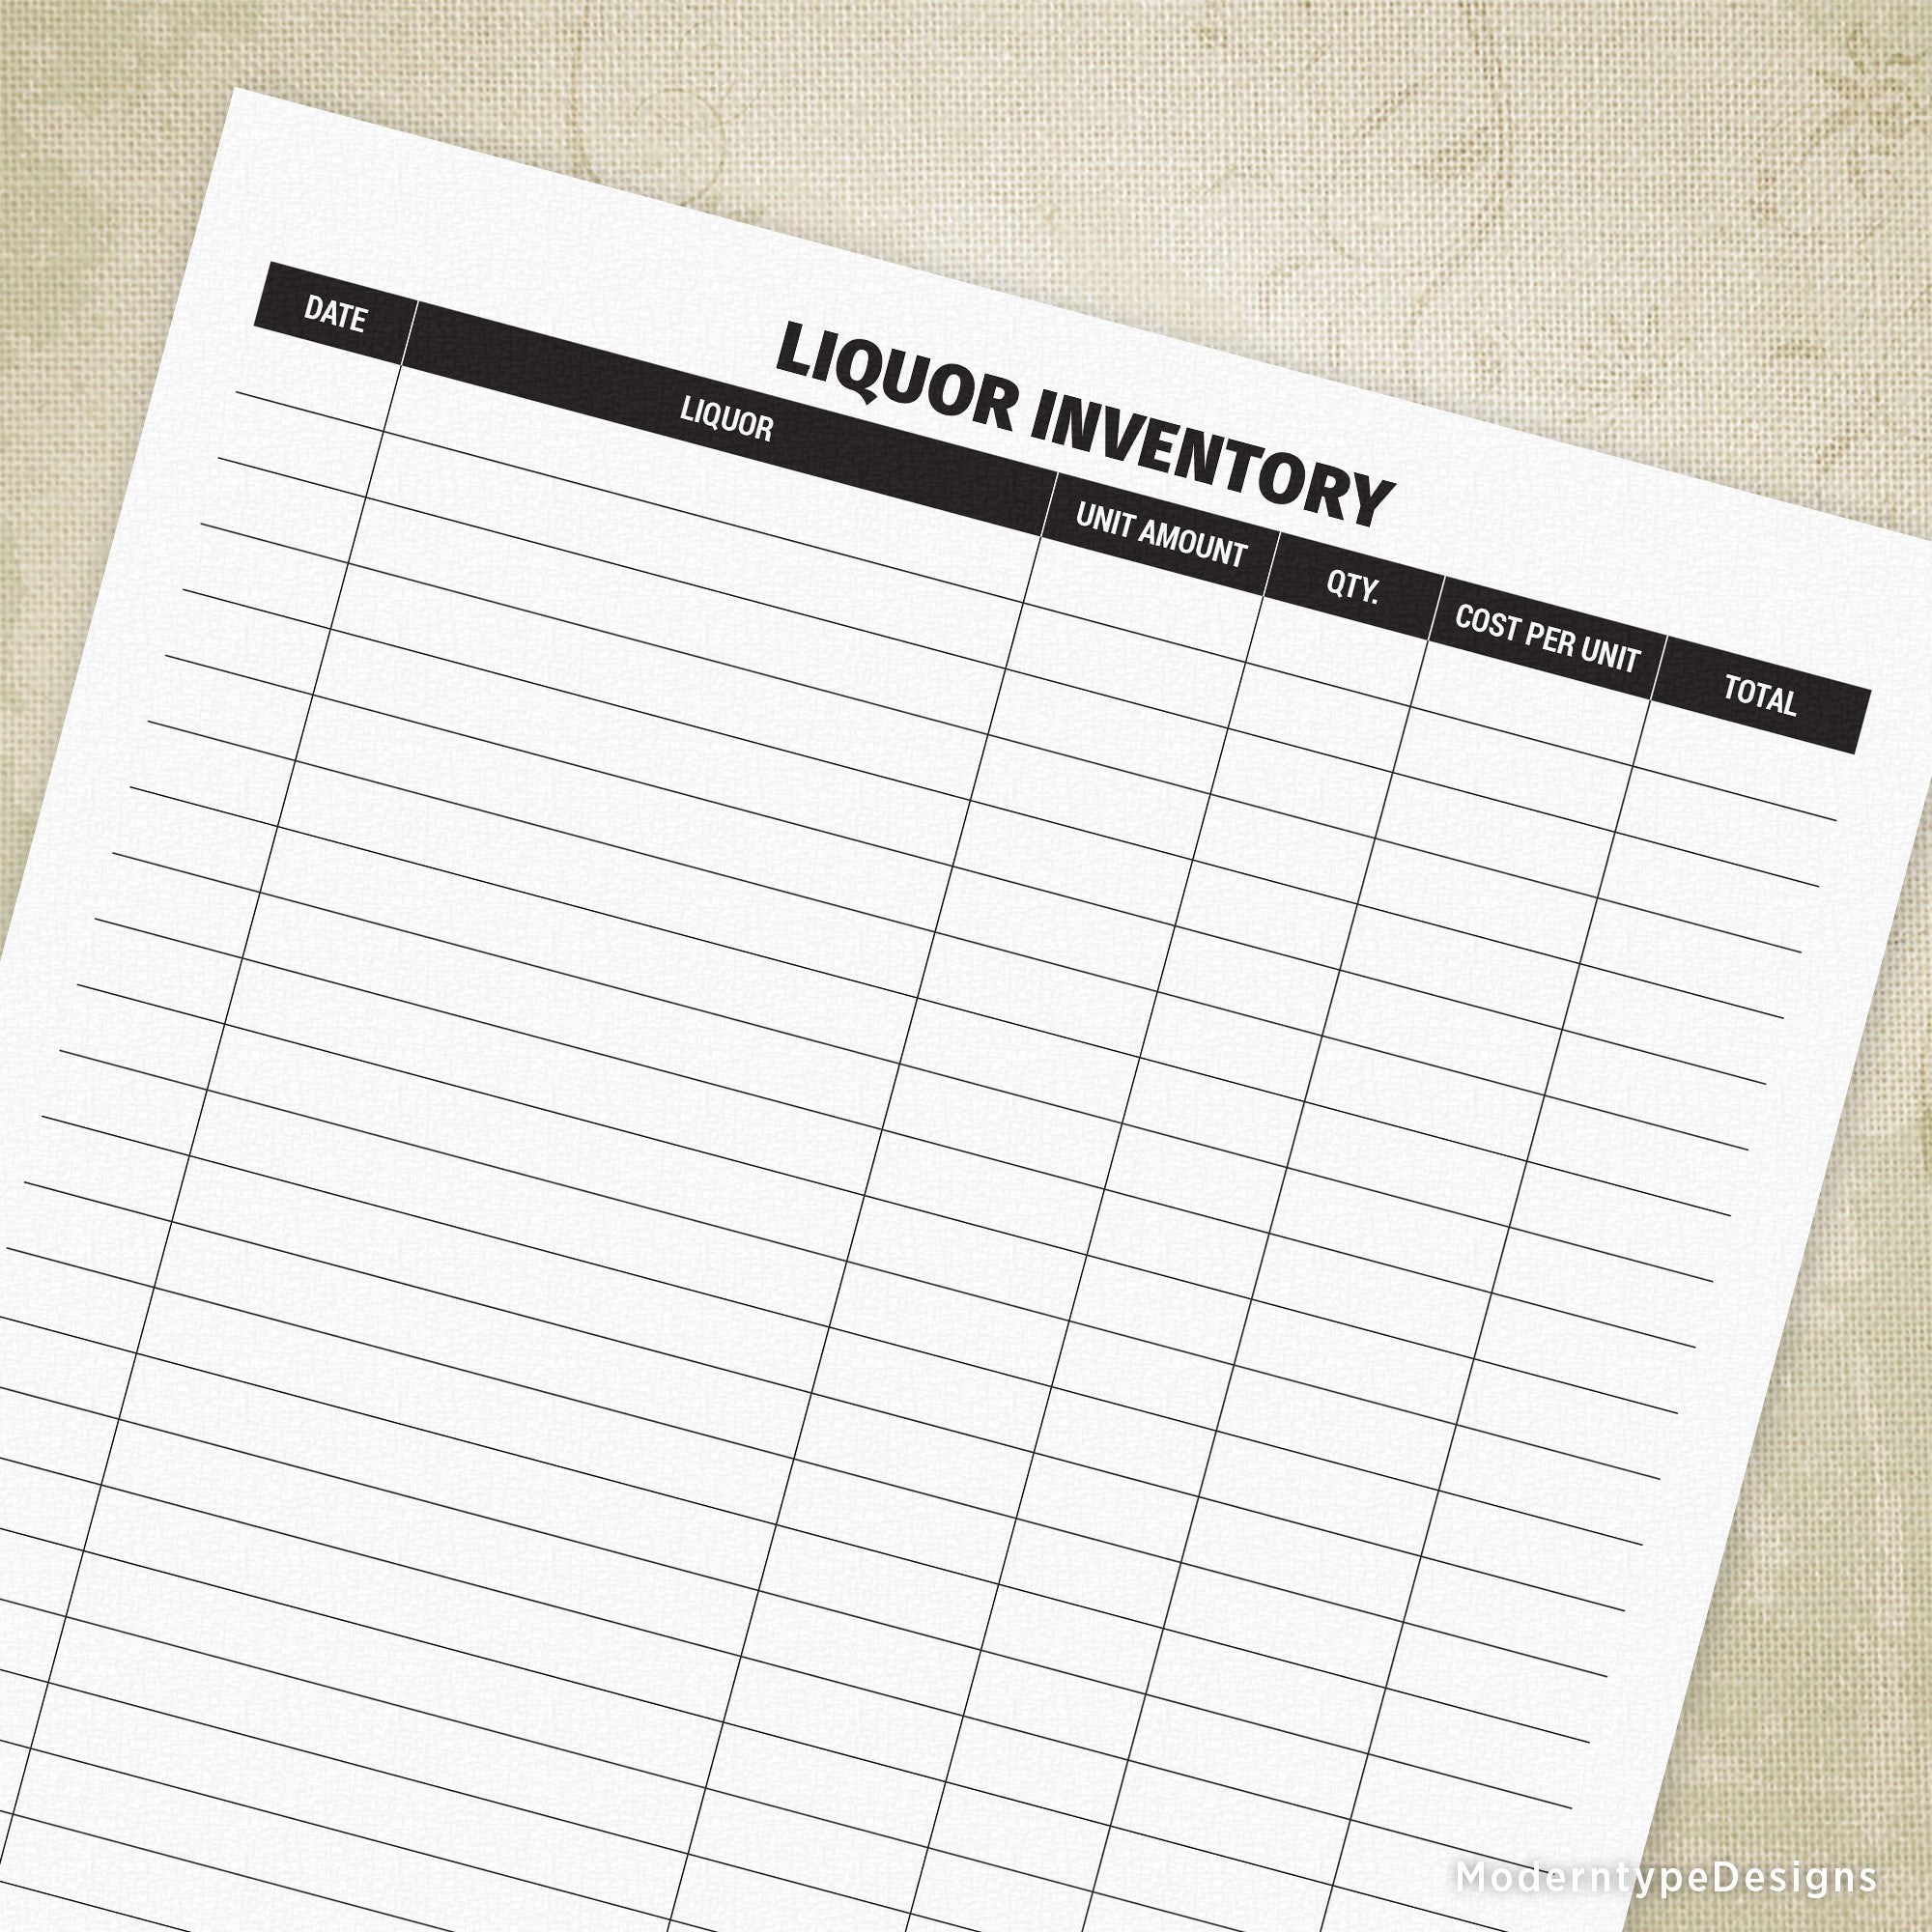 liquor-inventory-form-printable